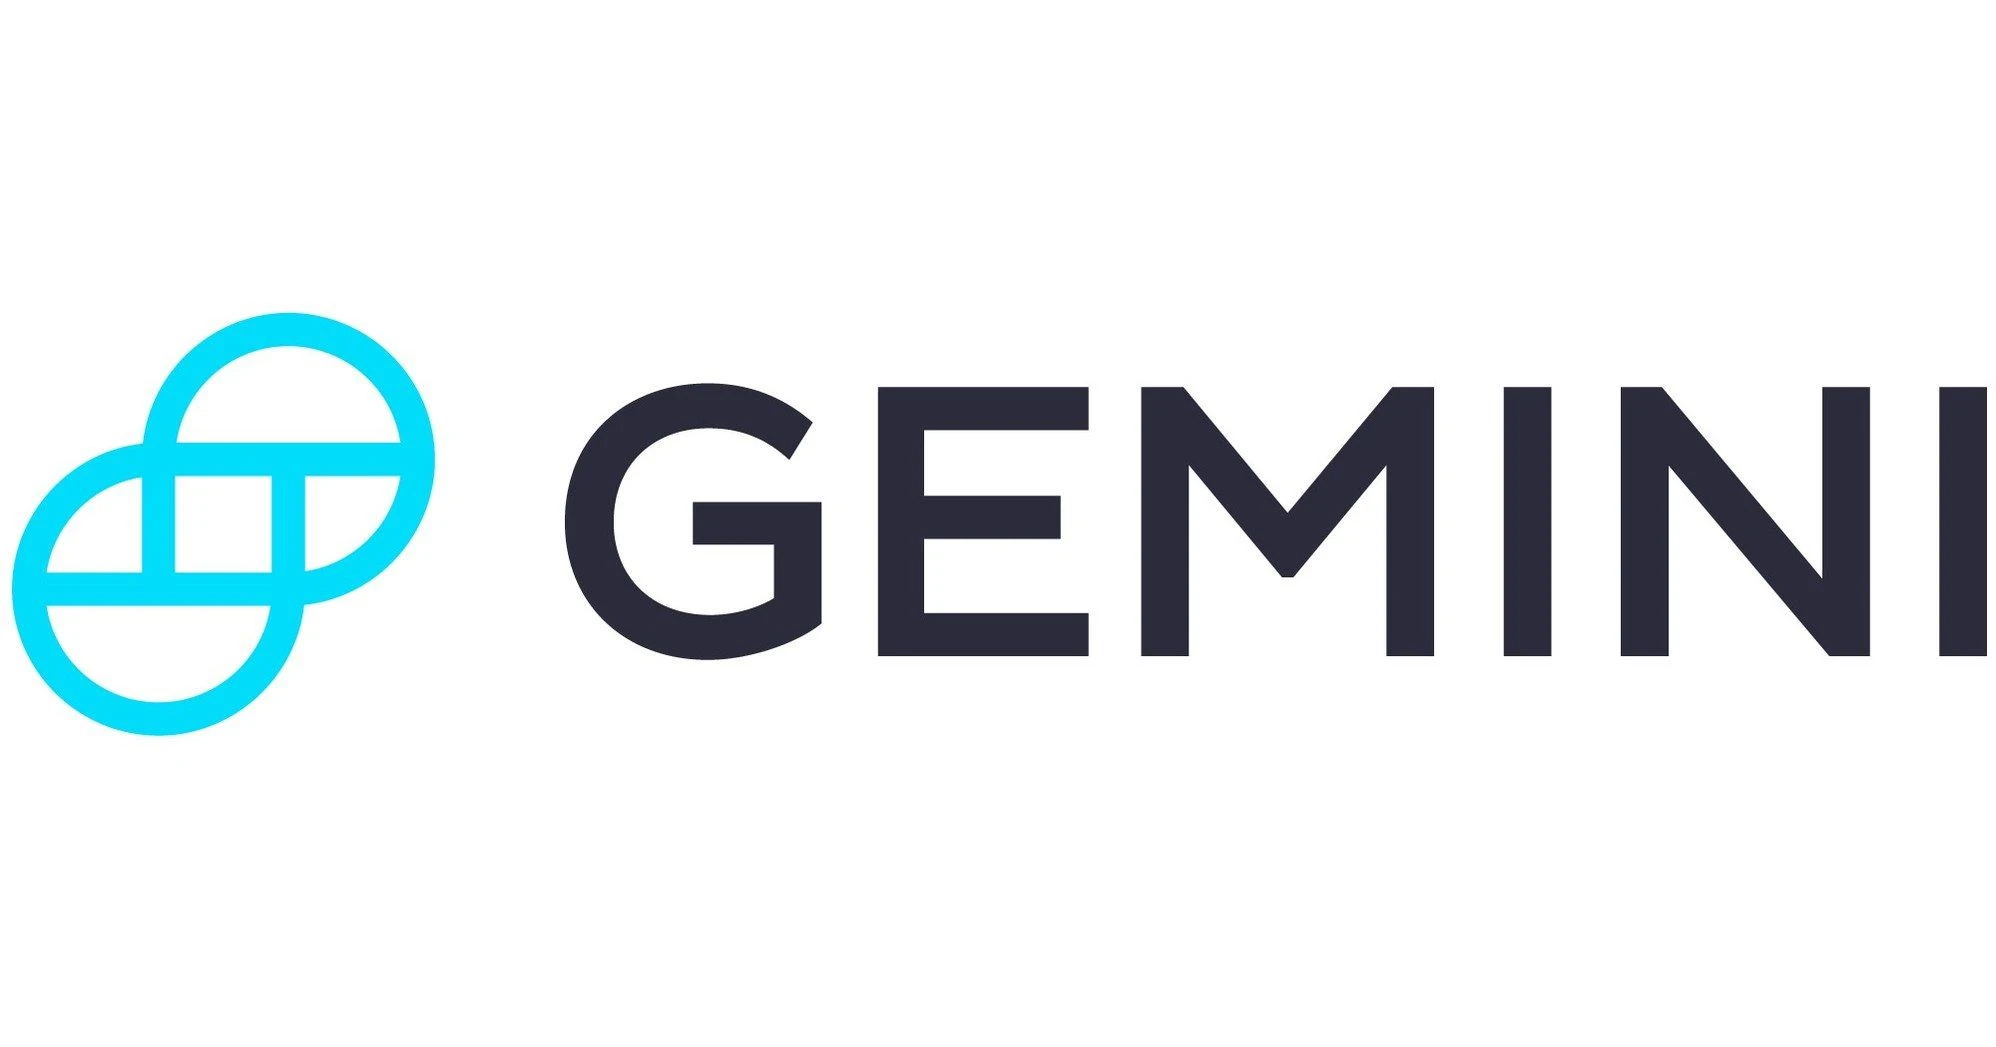 Gemini - Best for Security